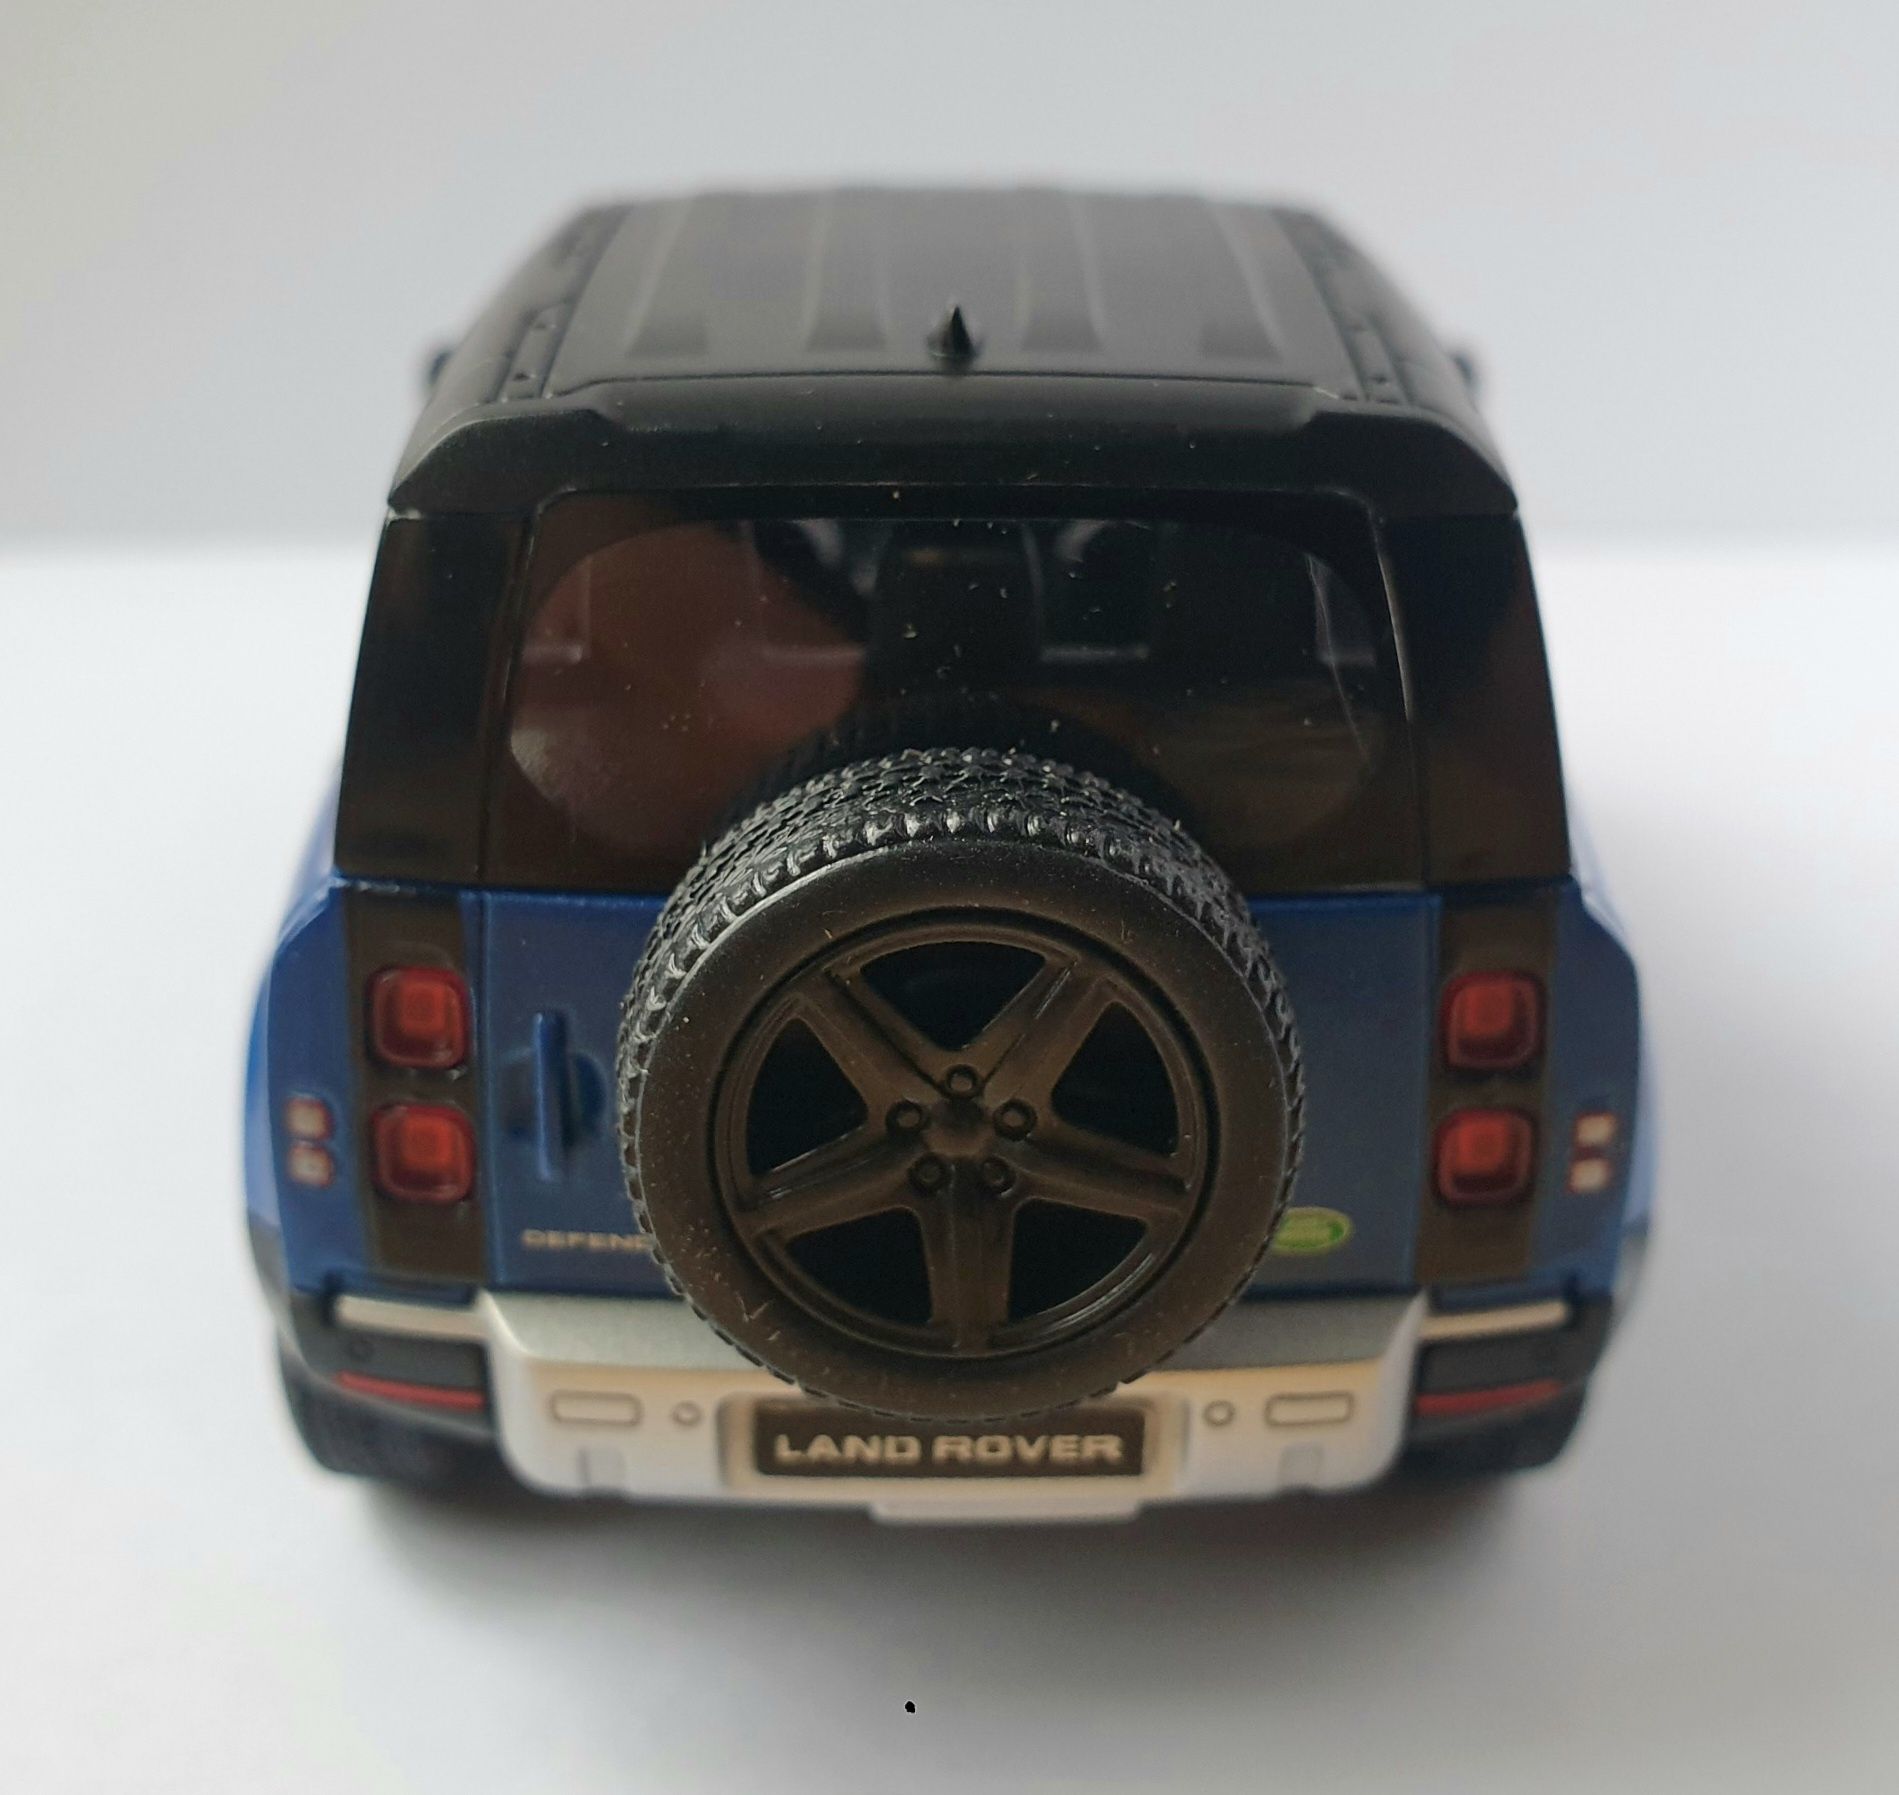 Samochód Land Rover Defender 90 Kinsmart die cast model 1:36